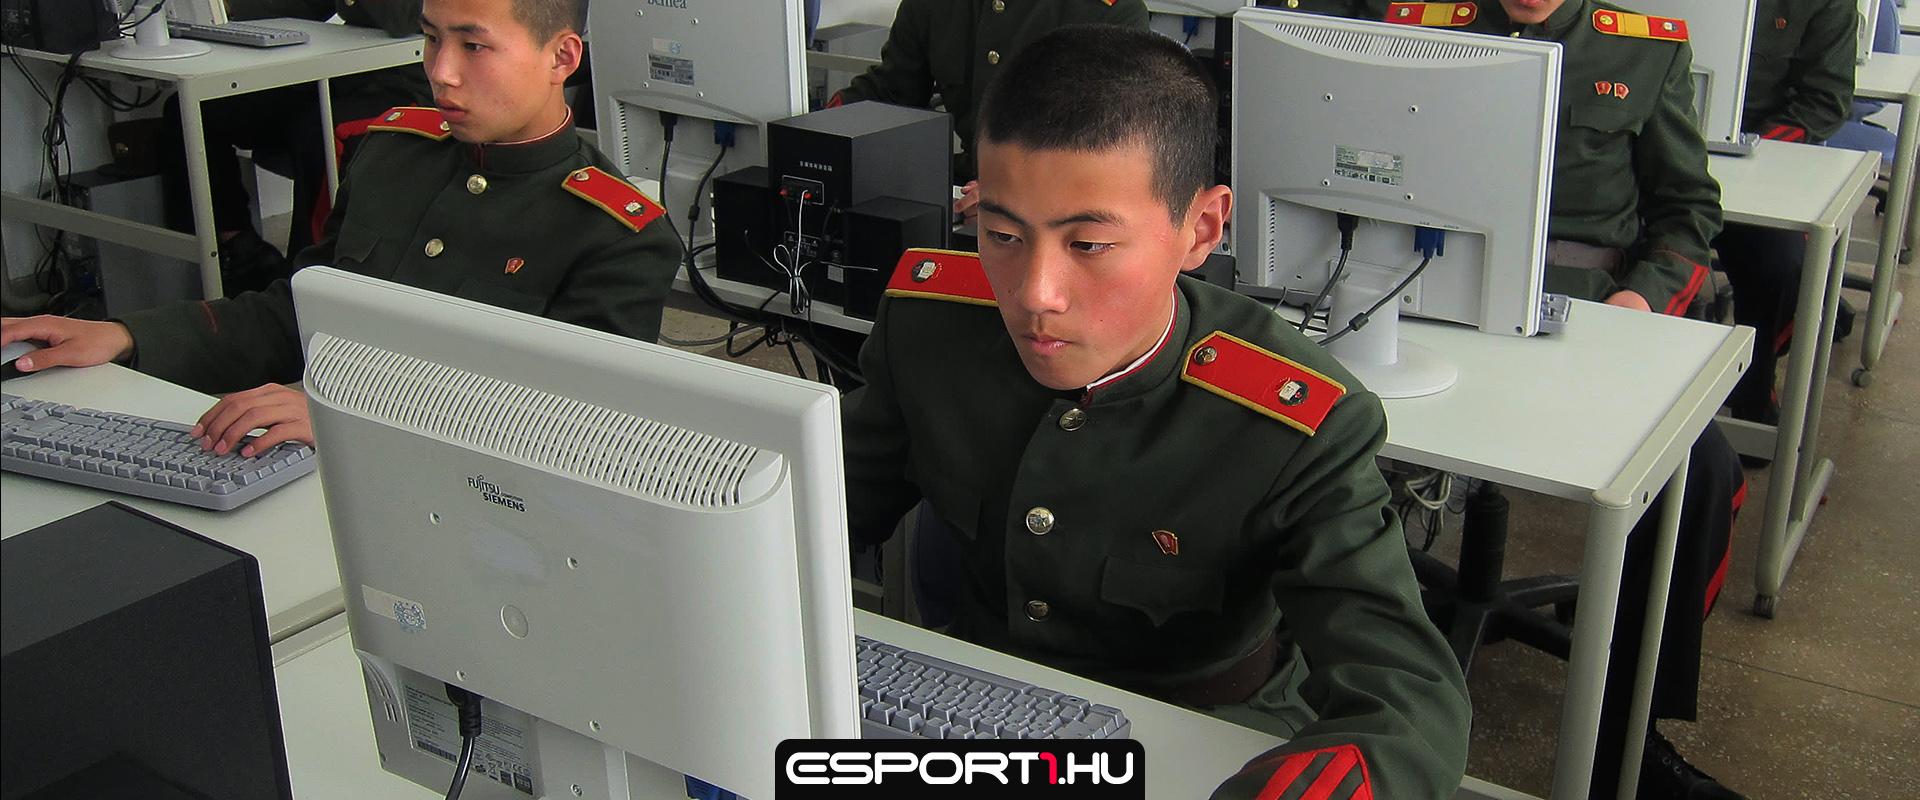 Nem vagy férfi, ha nem ismered ezt a játékot: ilyen a gamer élet Észak-Koreában